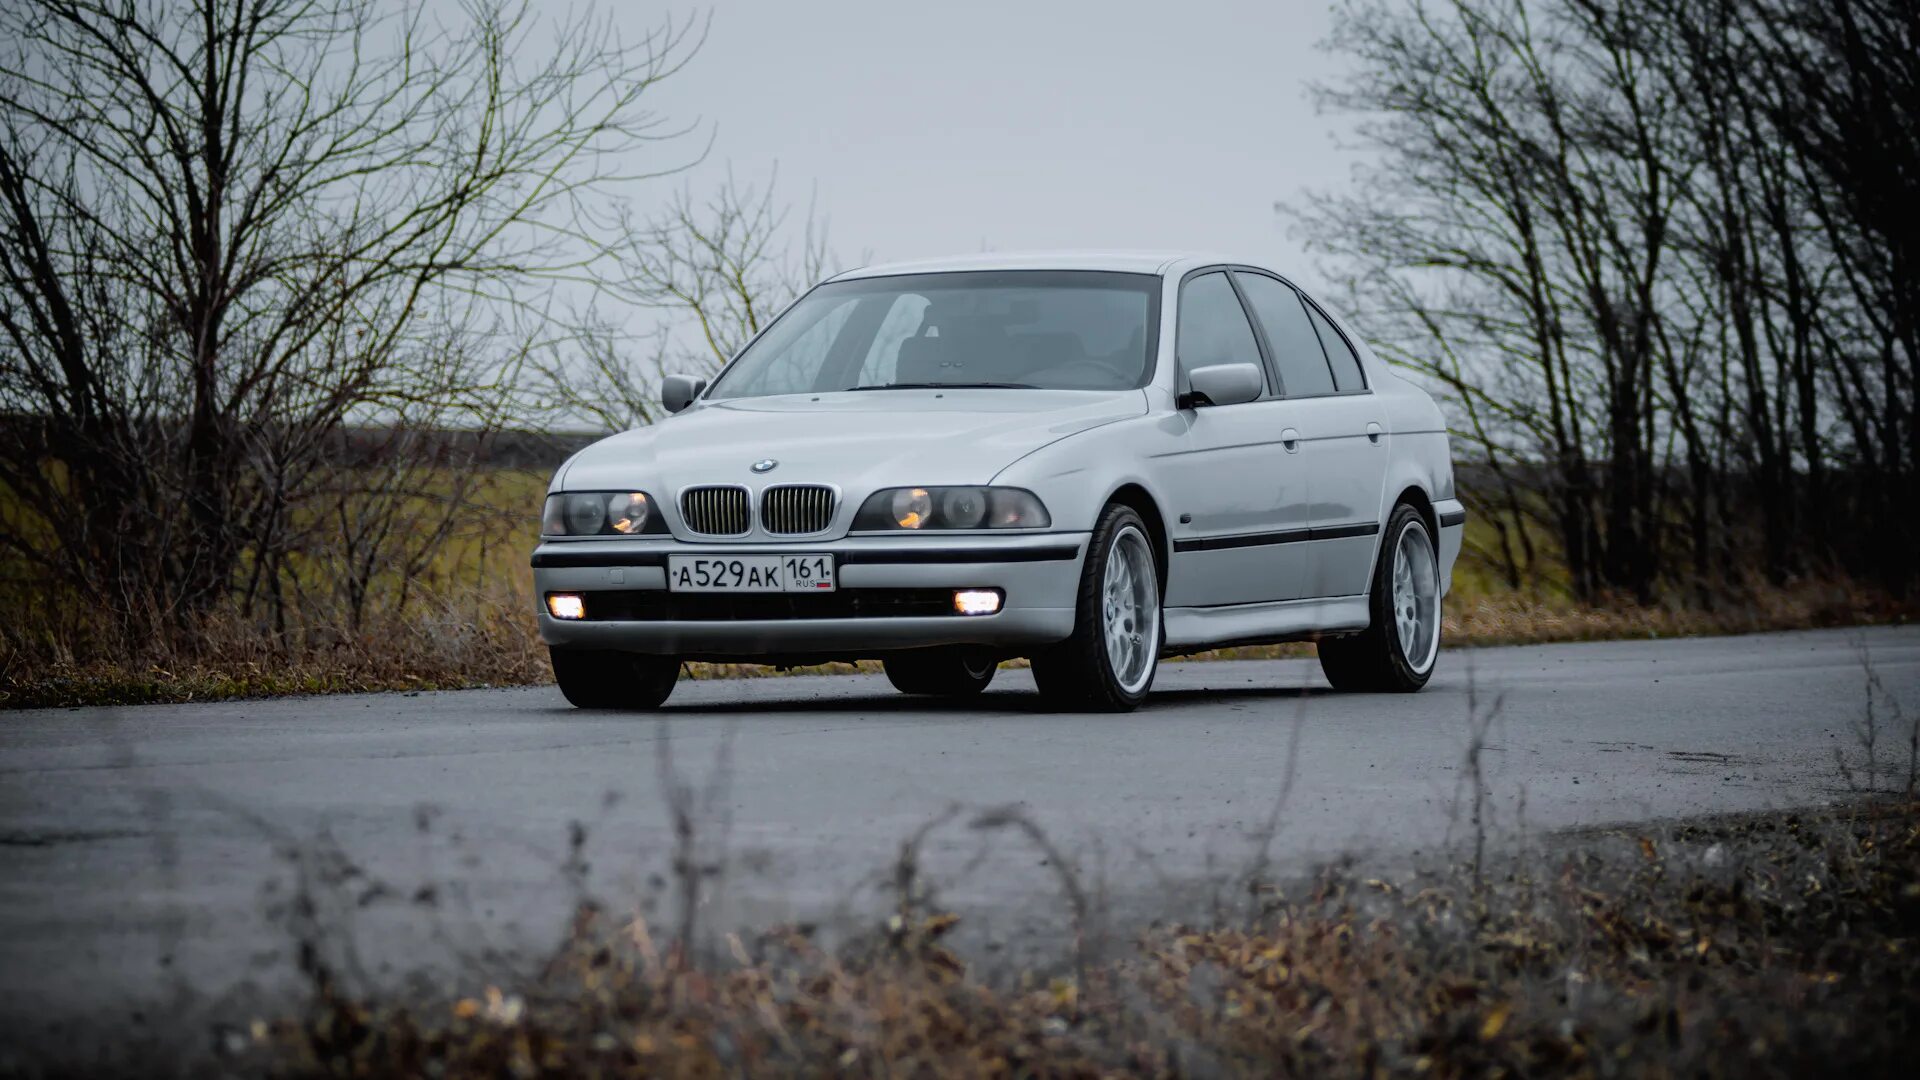 БМВ е39. BMW 5 Series (e39). БМВ е39 серая. BMW e39 1996. Бмв е39 купить бу